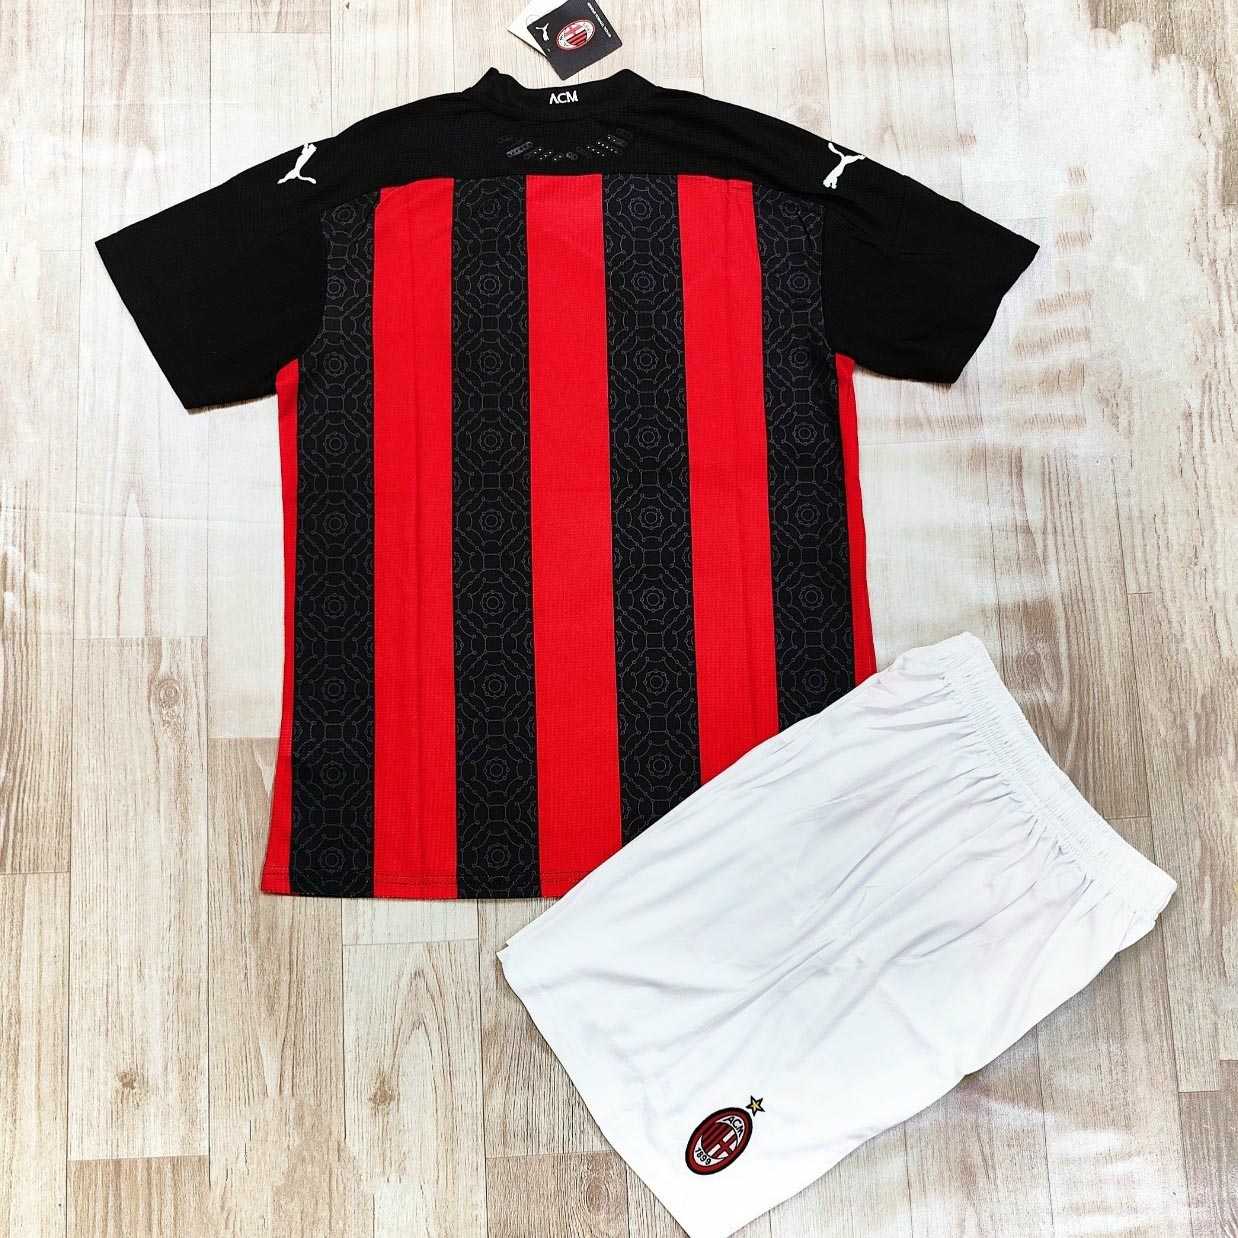 Bộ áo đấu đá banh clb bóng đá Ac Milan kẻ sọc đen đỏ sân nhà mùa 2021 năm 2020 2021 logo thêu hàng thái 2